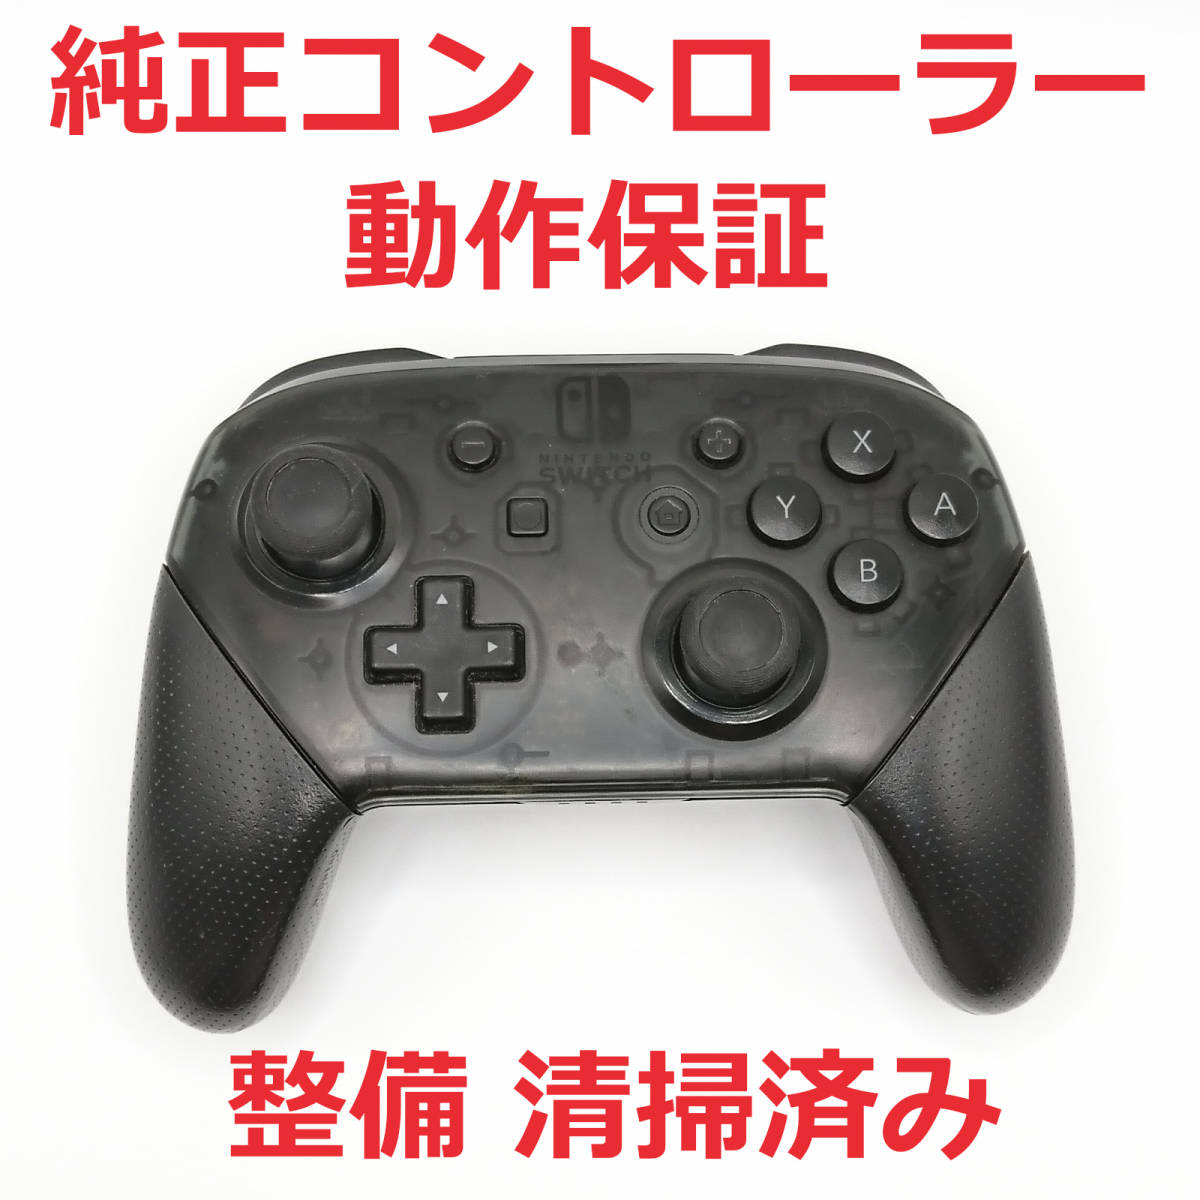 アウトレット 大阪 Nintendo switch Proコントローラー プロコン ブラック 純正 完売商品:6667円 その他